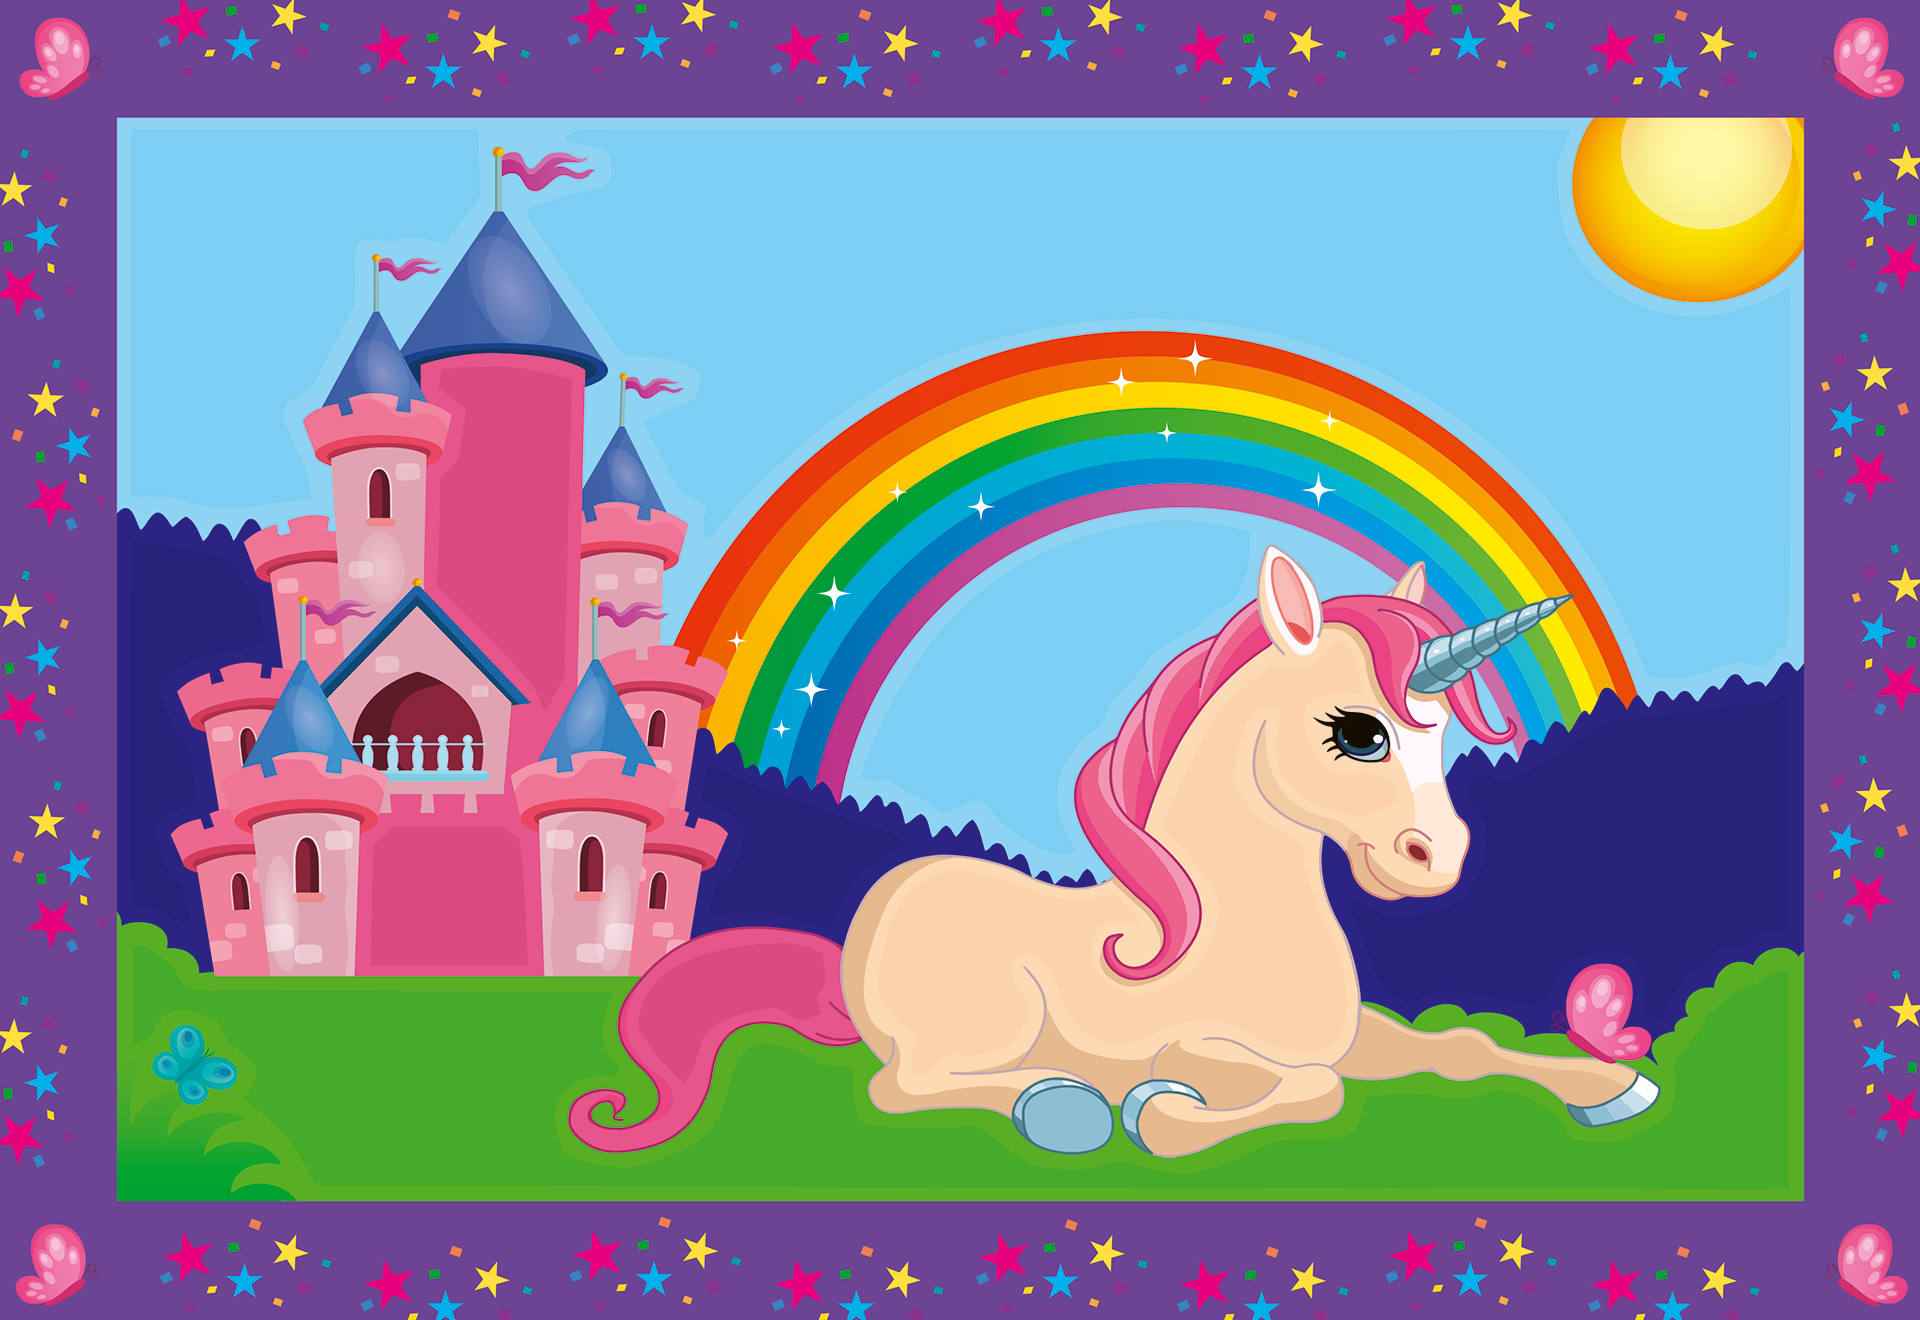 Ravensburer - creart serie junior, unicorni, kit dipingere con i numeri, contiene 2 tavole prestampate, pennello, colori, gioco creativo per maschi e femmine dai 5+ anni di età - RAVENSBURGER